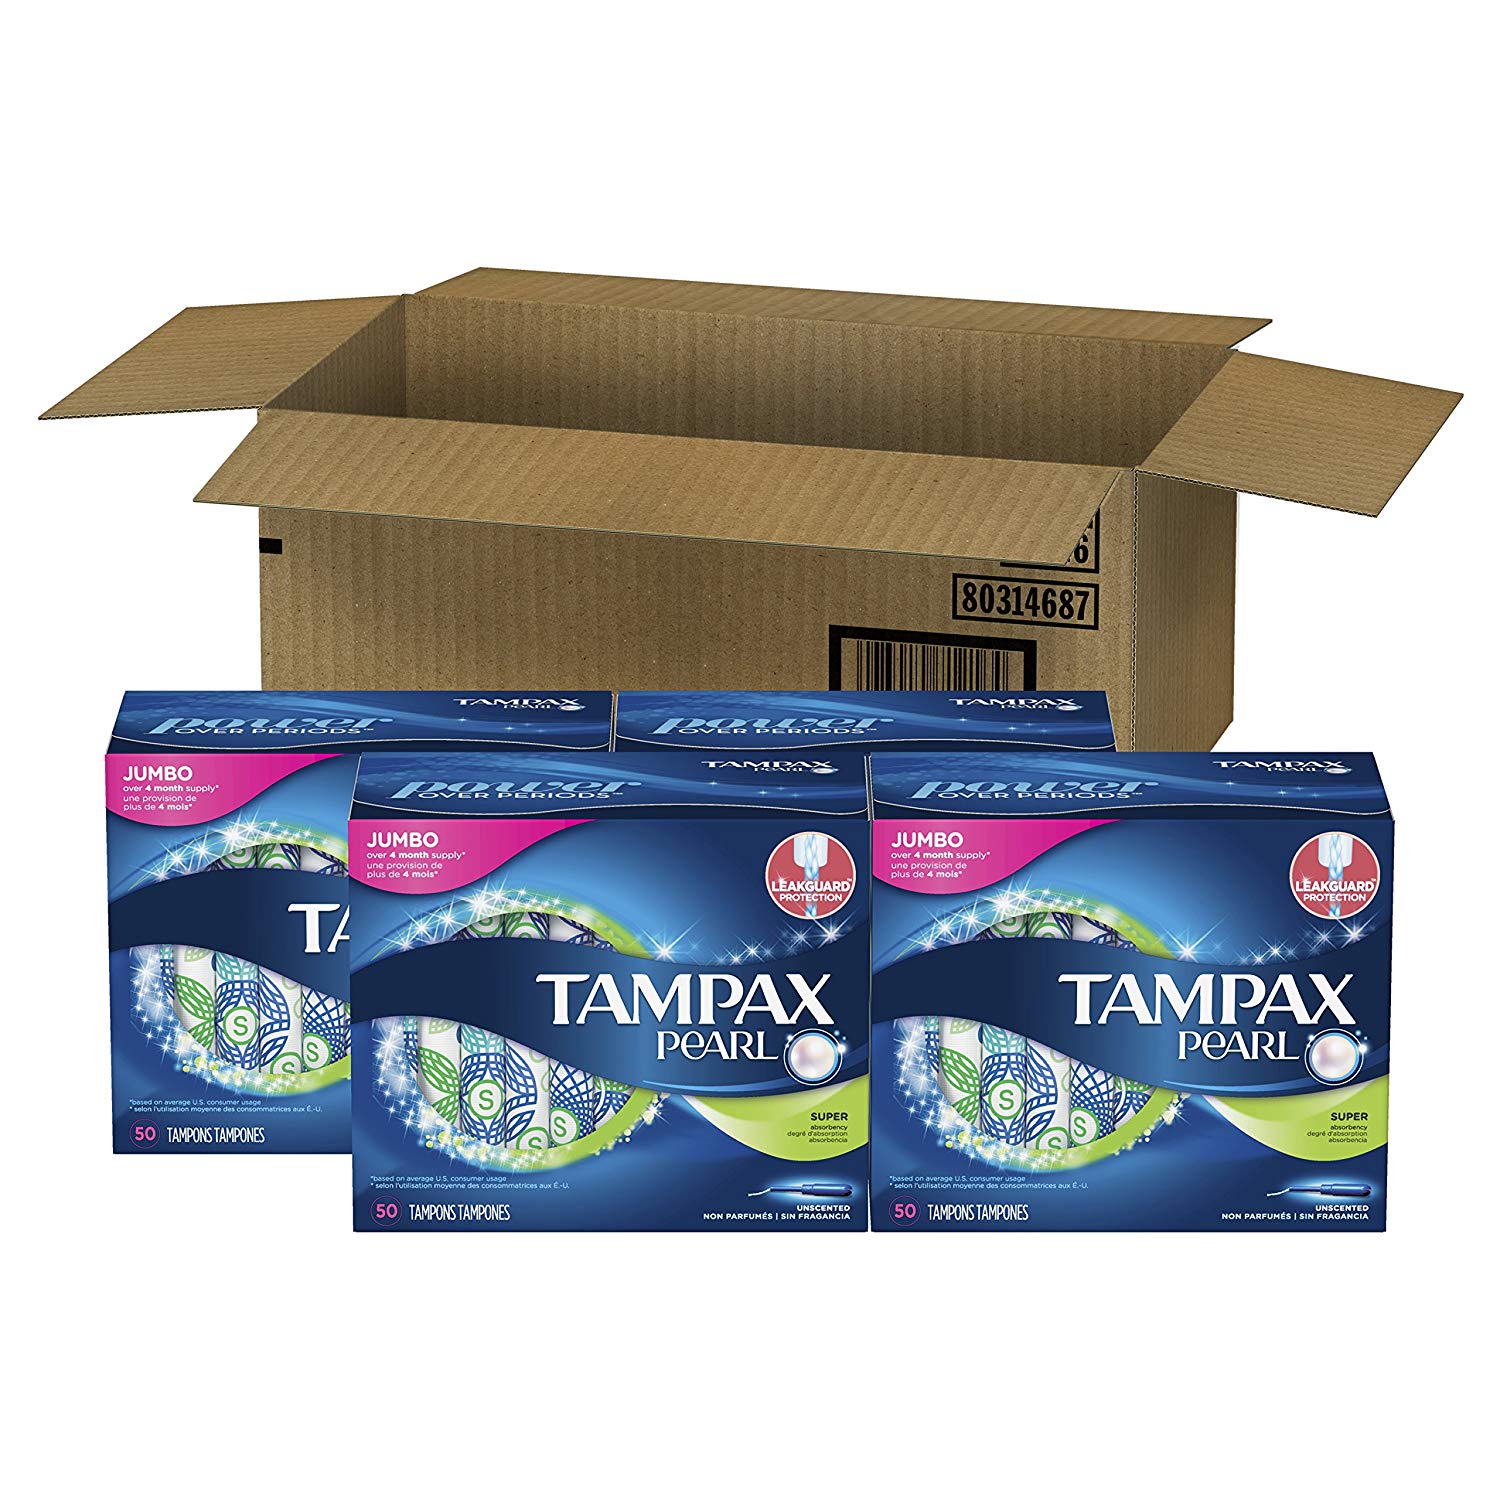 限时秒杀！#亚马逊海外购#Tampax Pearl 卫生棉条 带塑料导管 200支